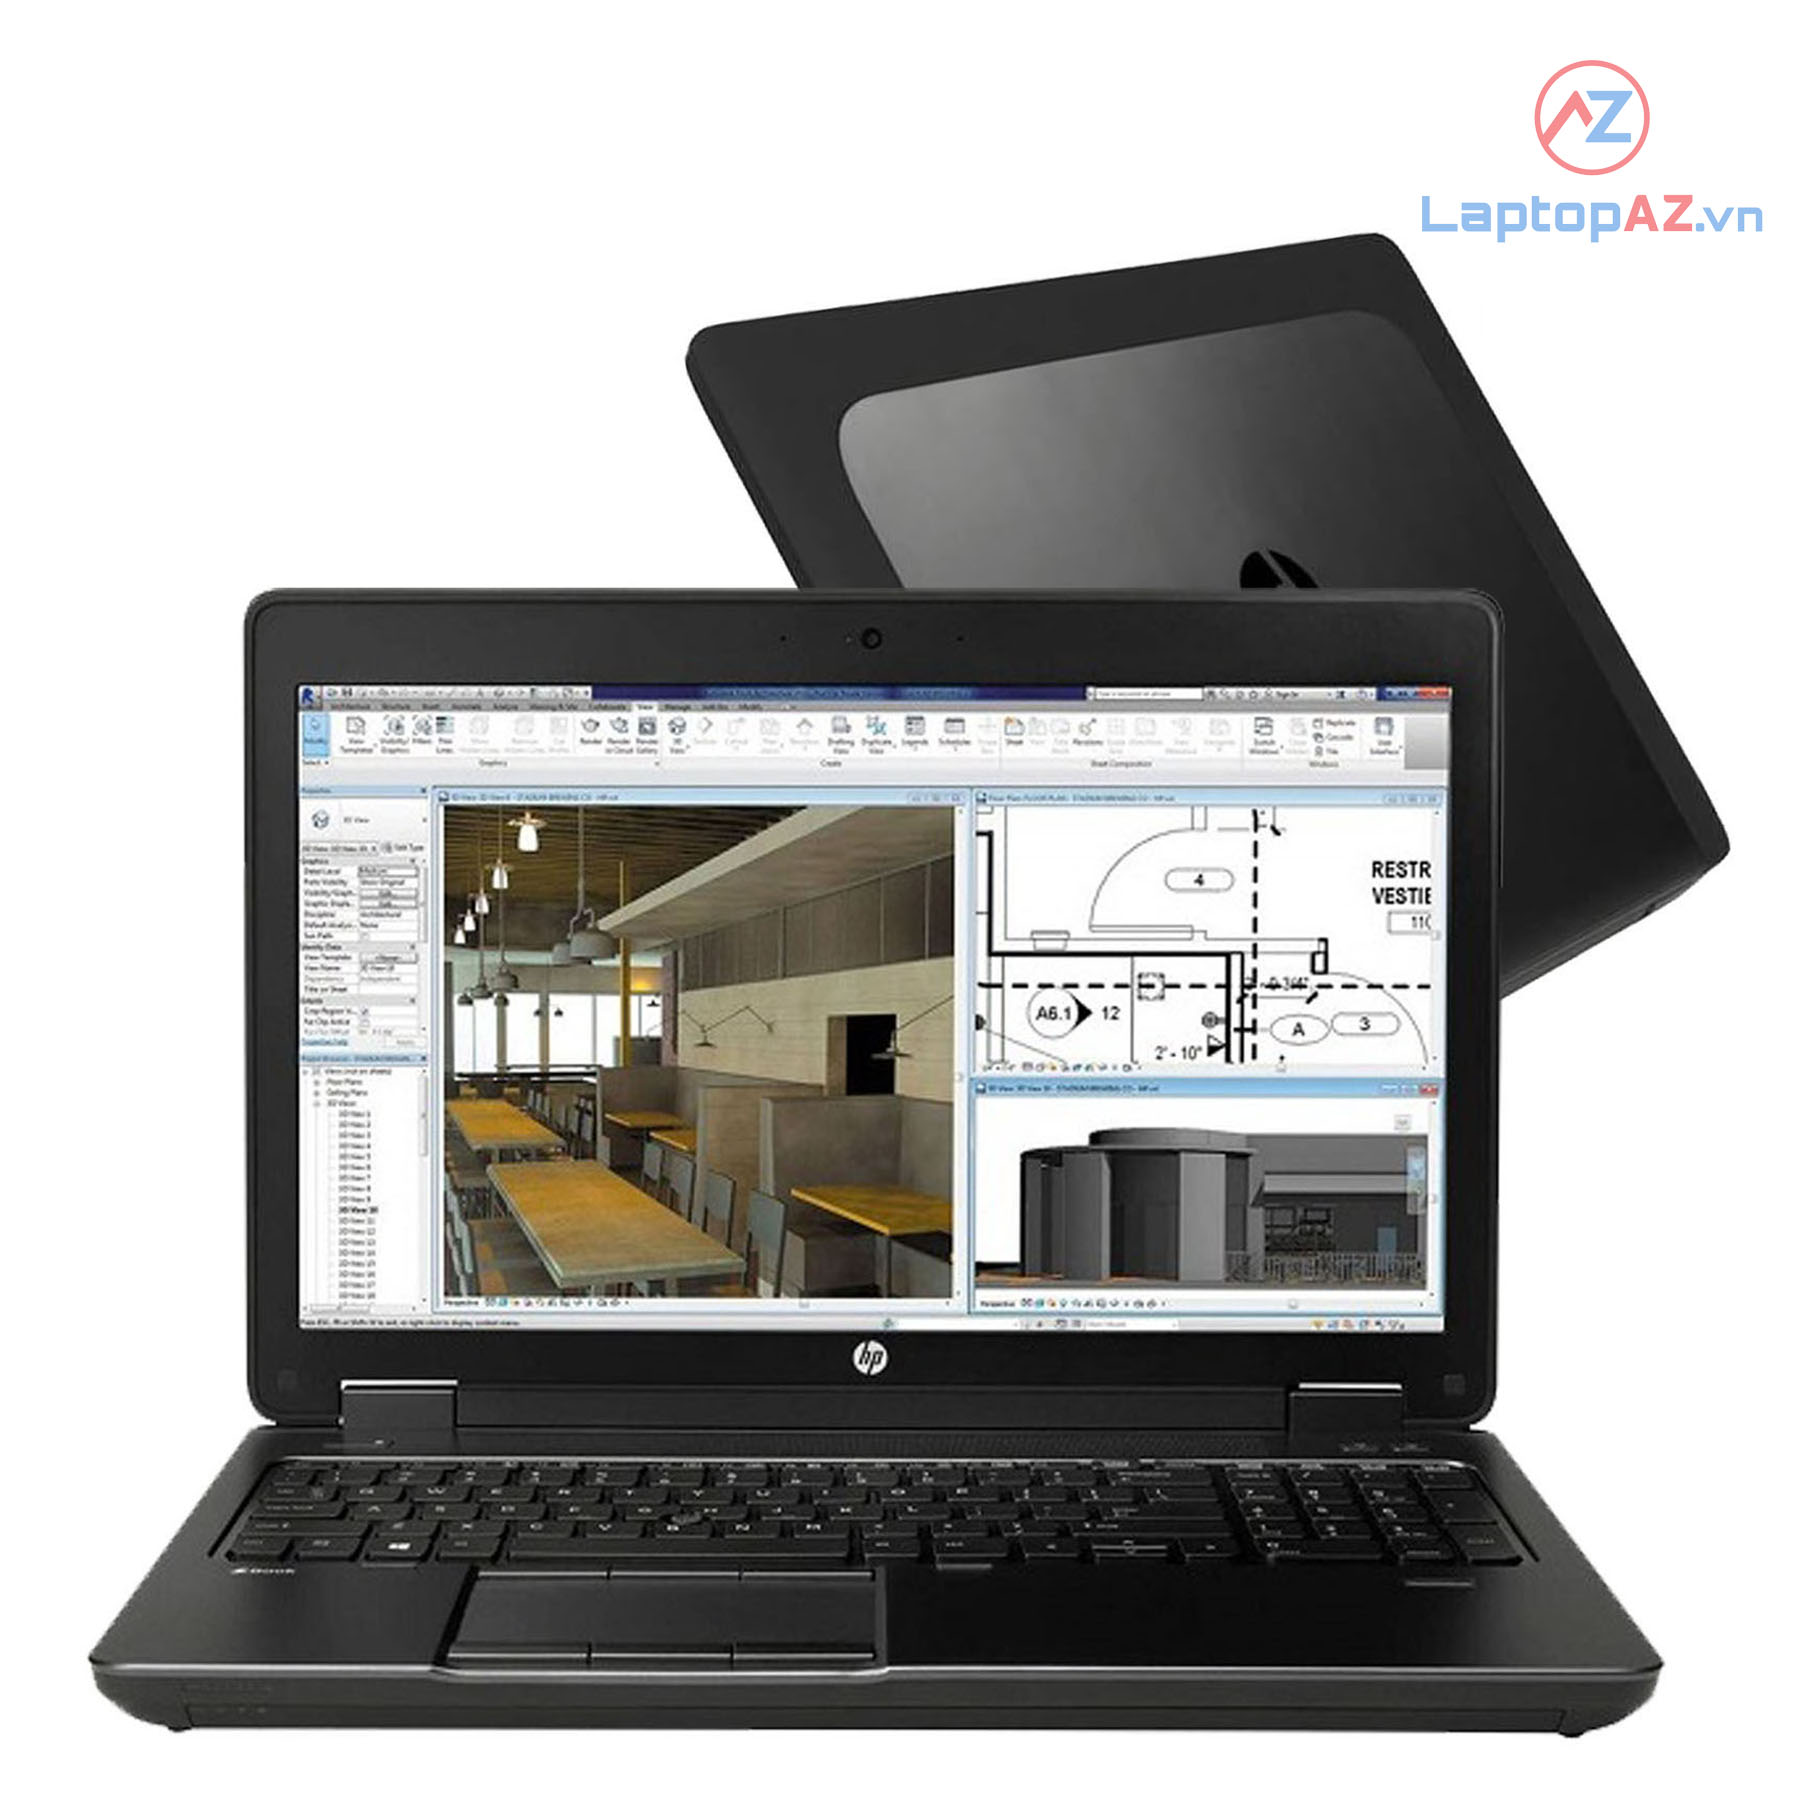 Laptop cũ HP Zbook 15 G2 (Core i7-4810MQ, 8GB, 256GB, VGA 2GB NVIDIA K1100M, 15.6 inch FHD)